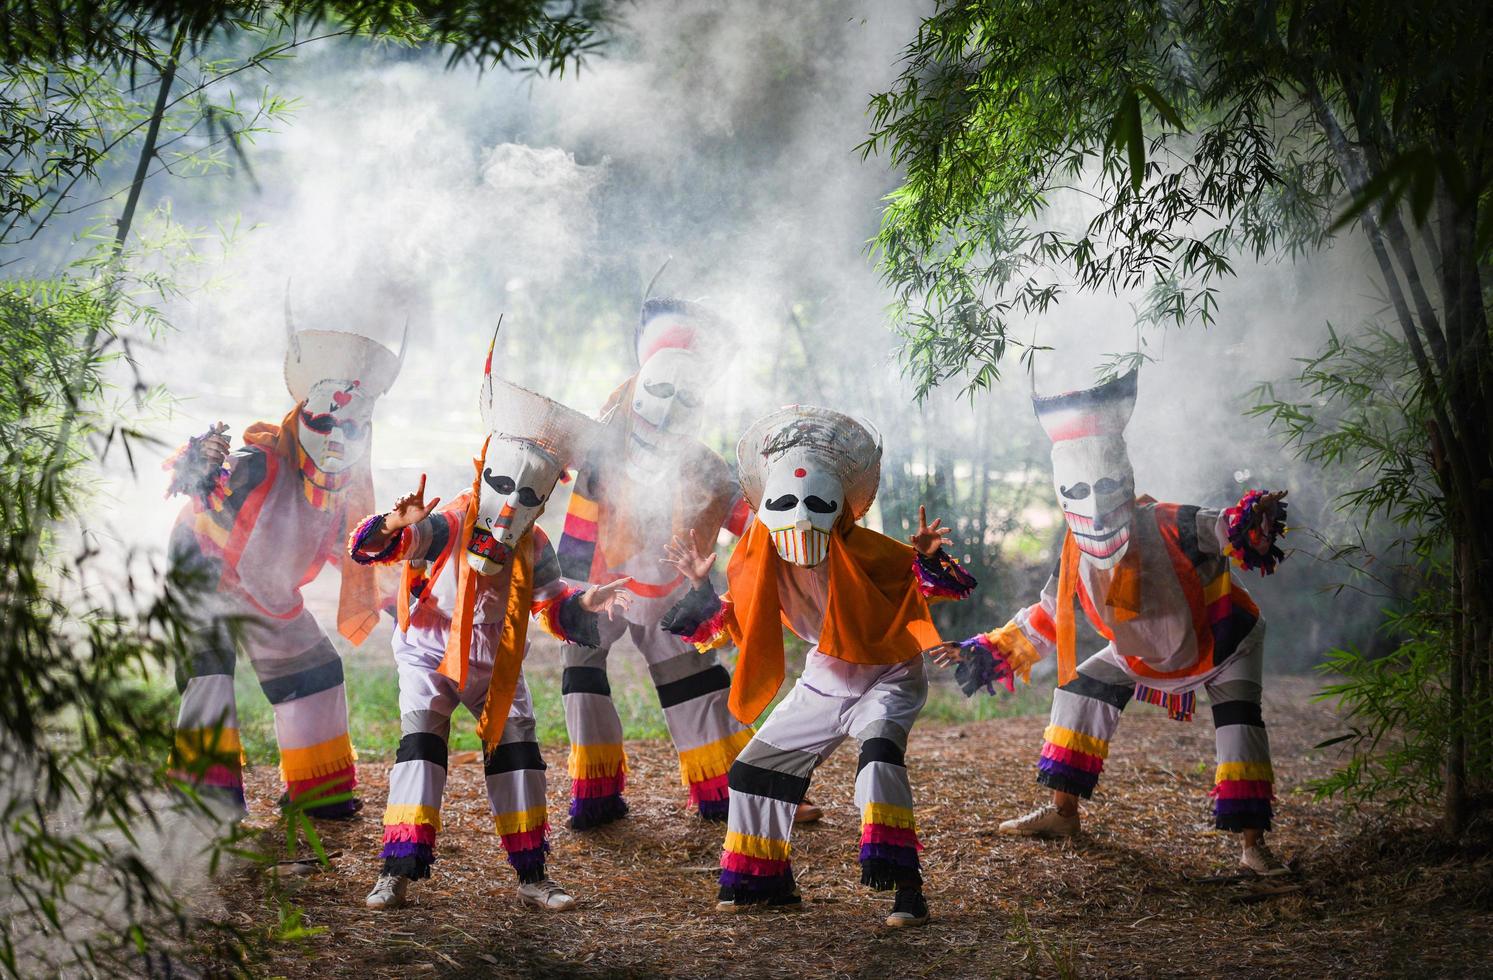 festival de phi ta khon máscara de fantasma y disfraces coloridos diversión máscara tradicional de tailandia el espectáculo arte y cultura provincia de loei dan sai festival de tailandia - phi ta khon o halloween de tailandia foto